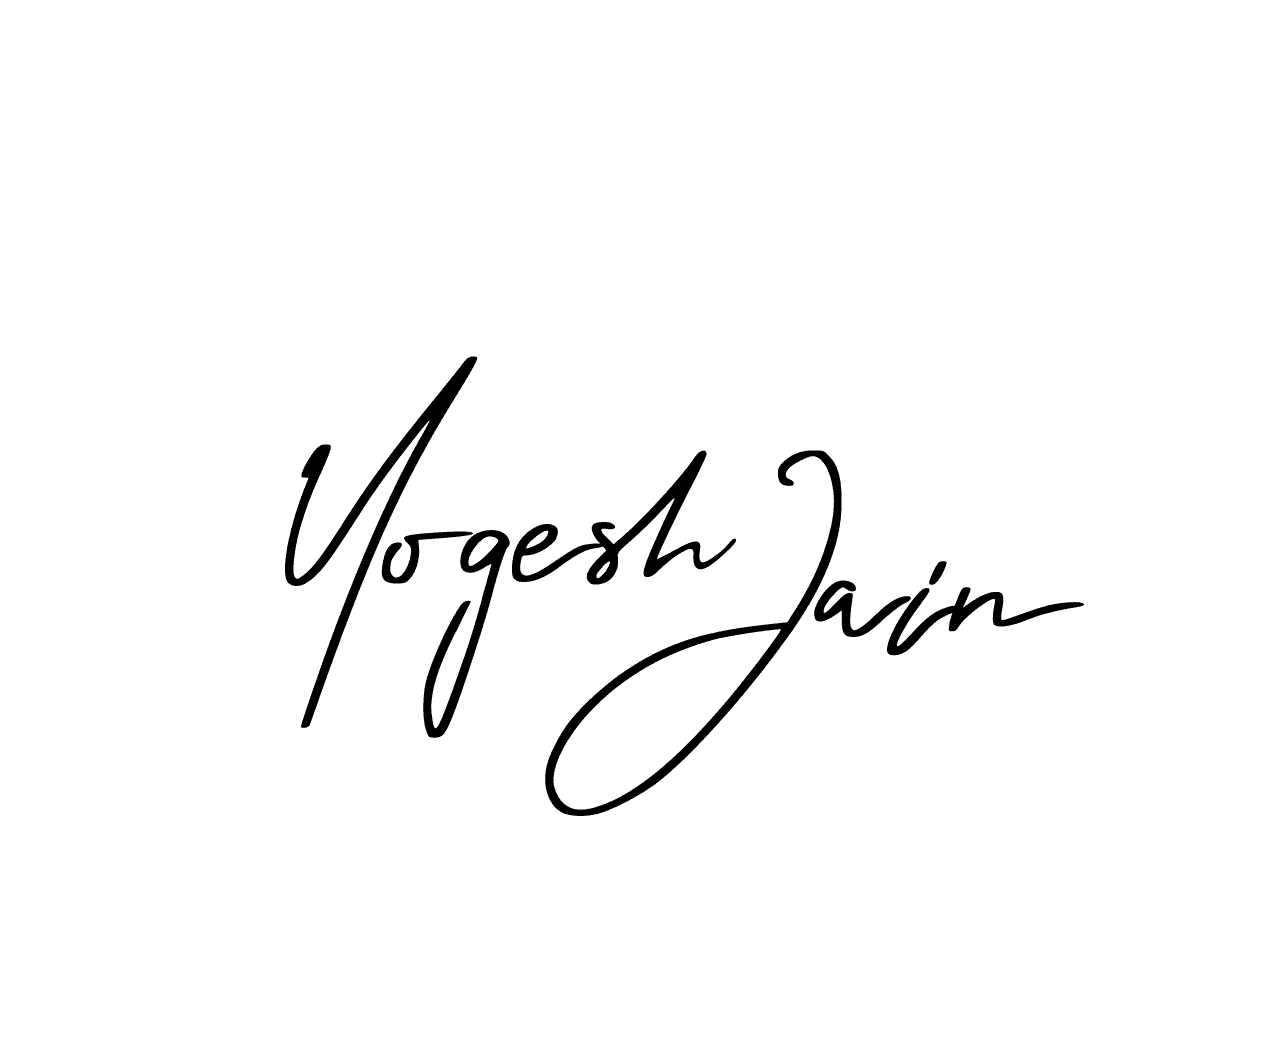 Yogesh jain logo